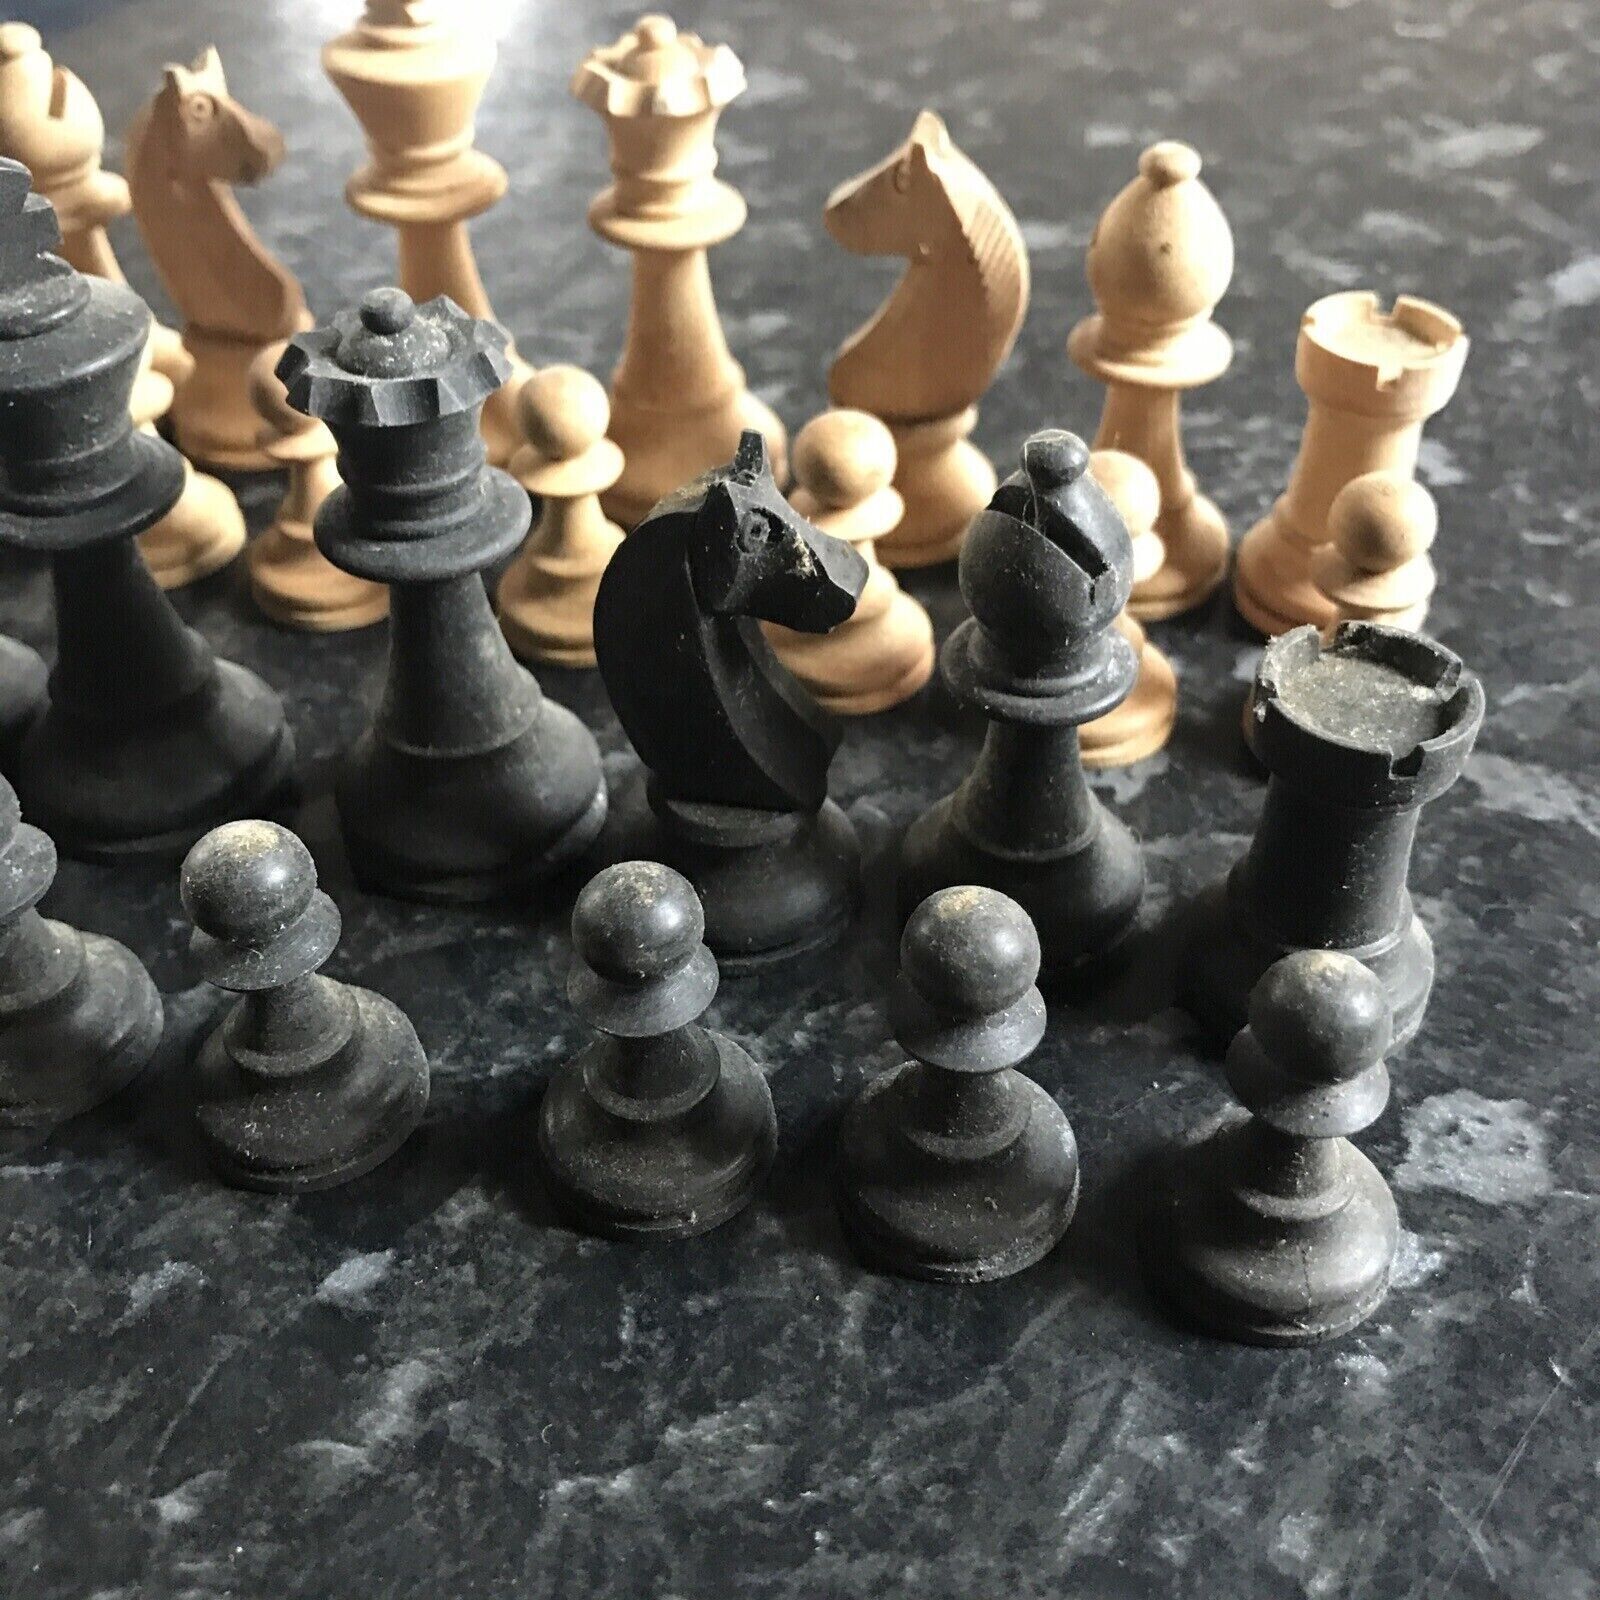 Full-set-vintage-chess-set-black-beige-carved-wooden-style